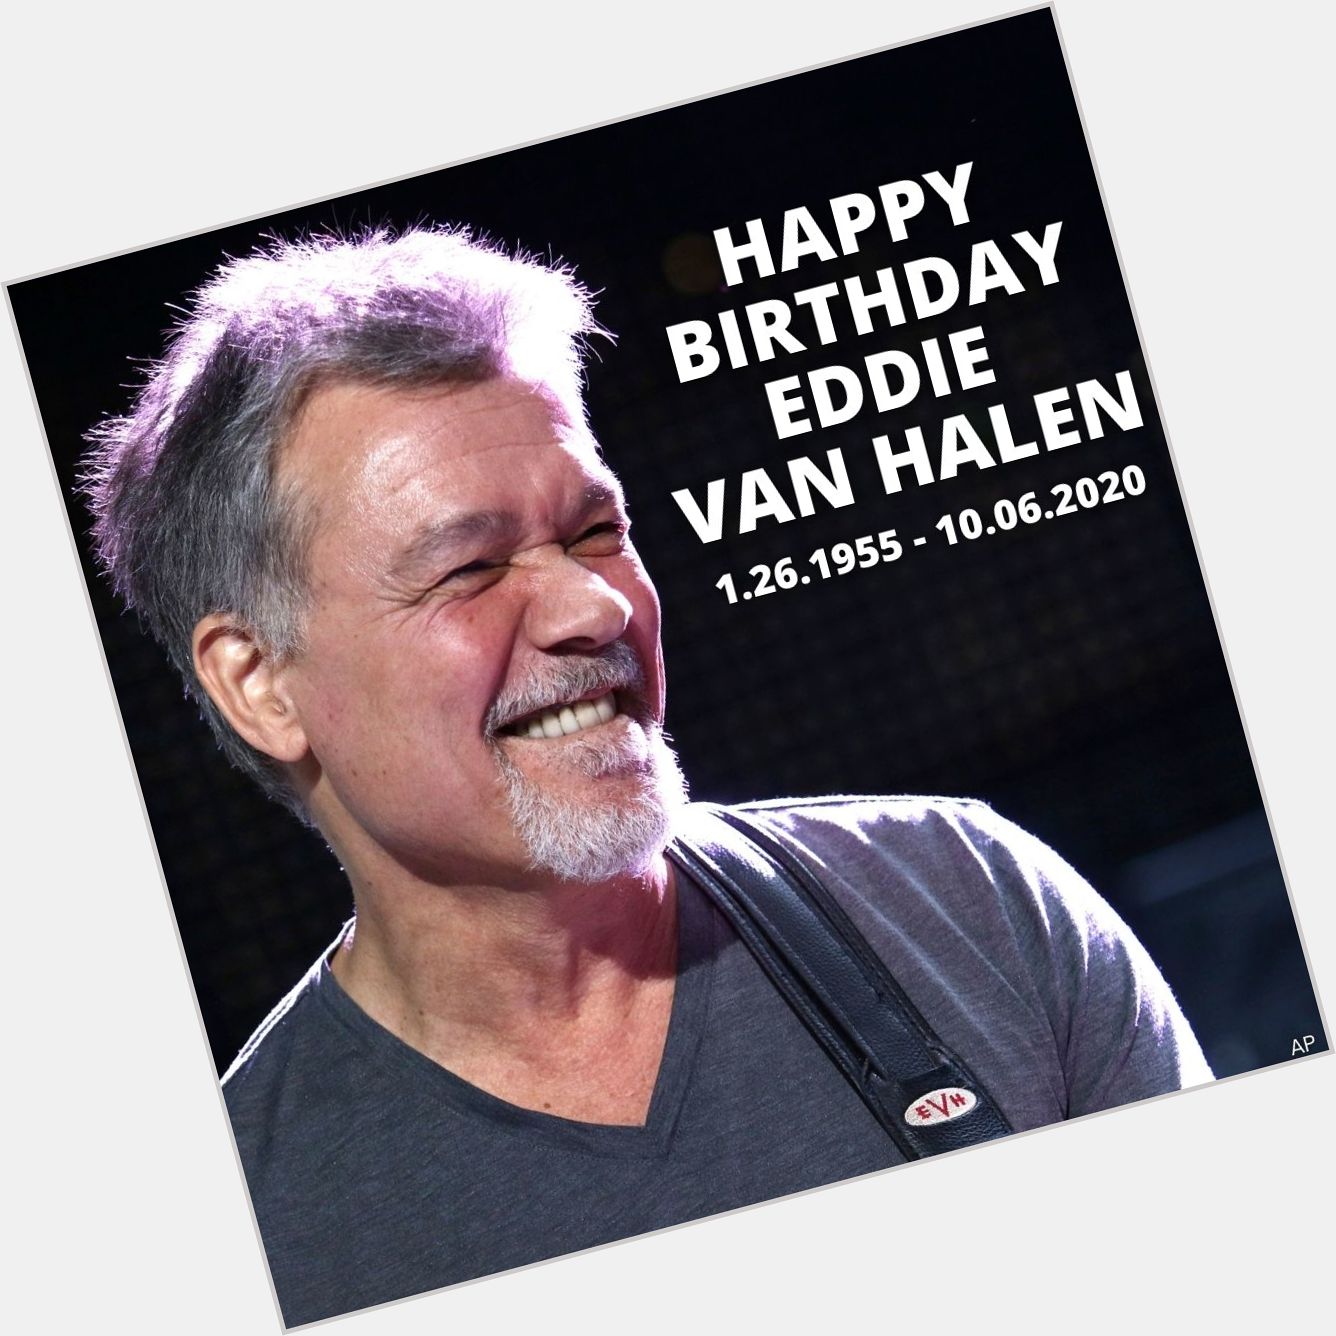 Happy Birthday Eddie Van Halen!

The musician would have been 66 today. 